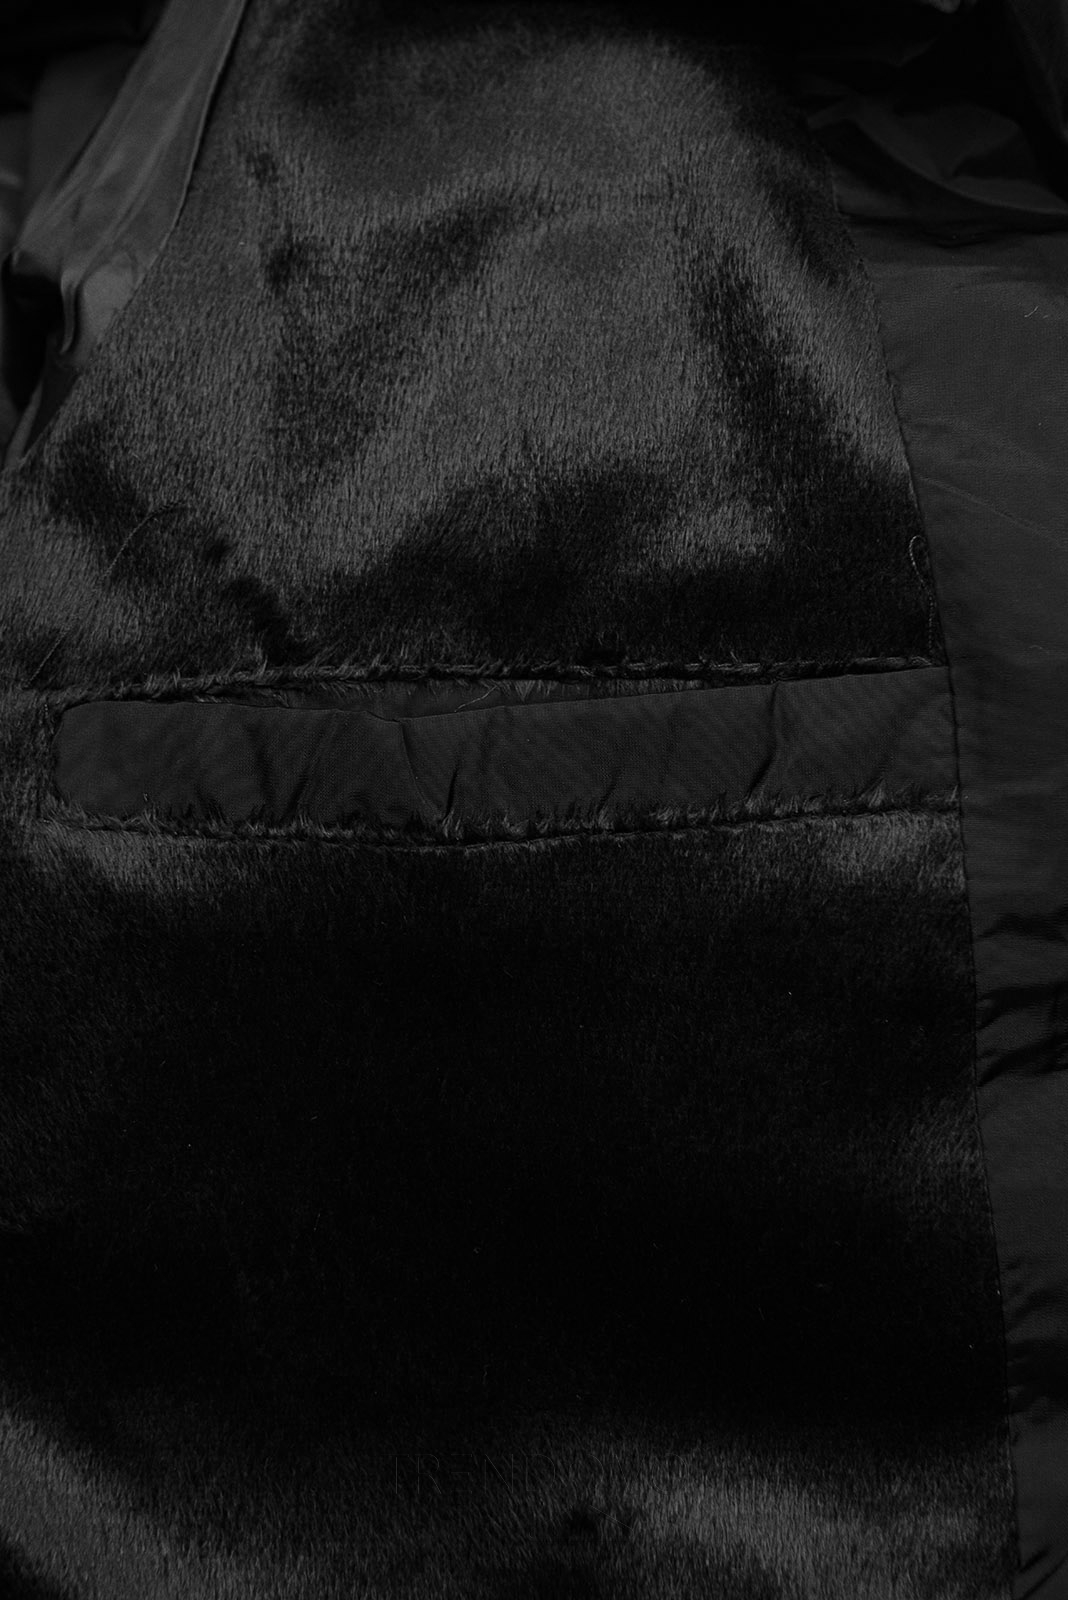 Černá zimní bunda v prošívaném designu